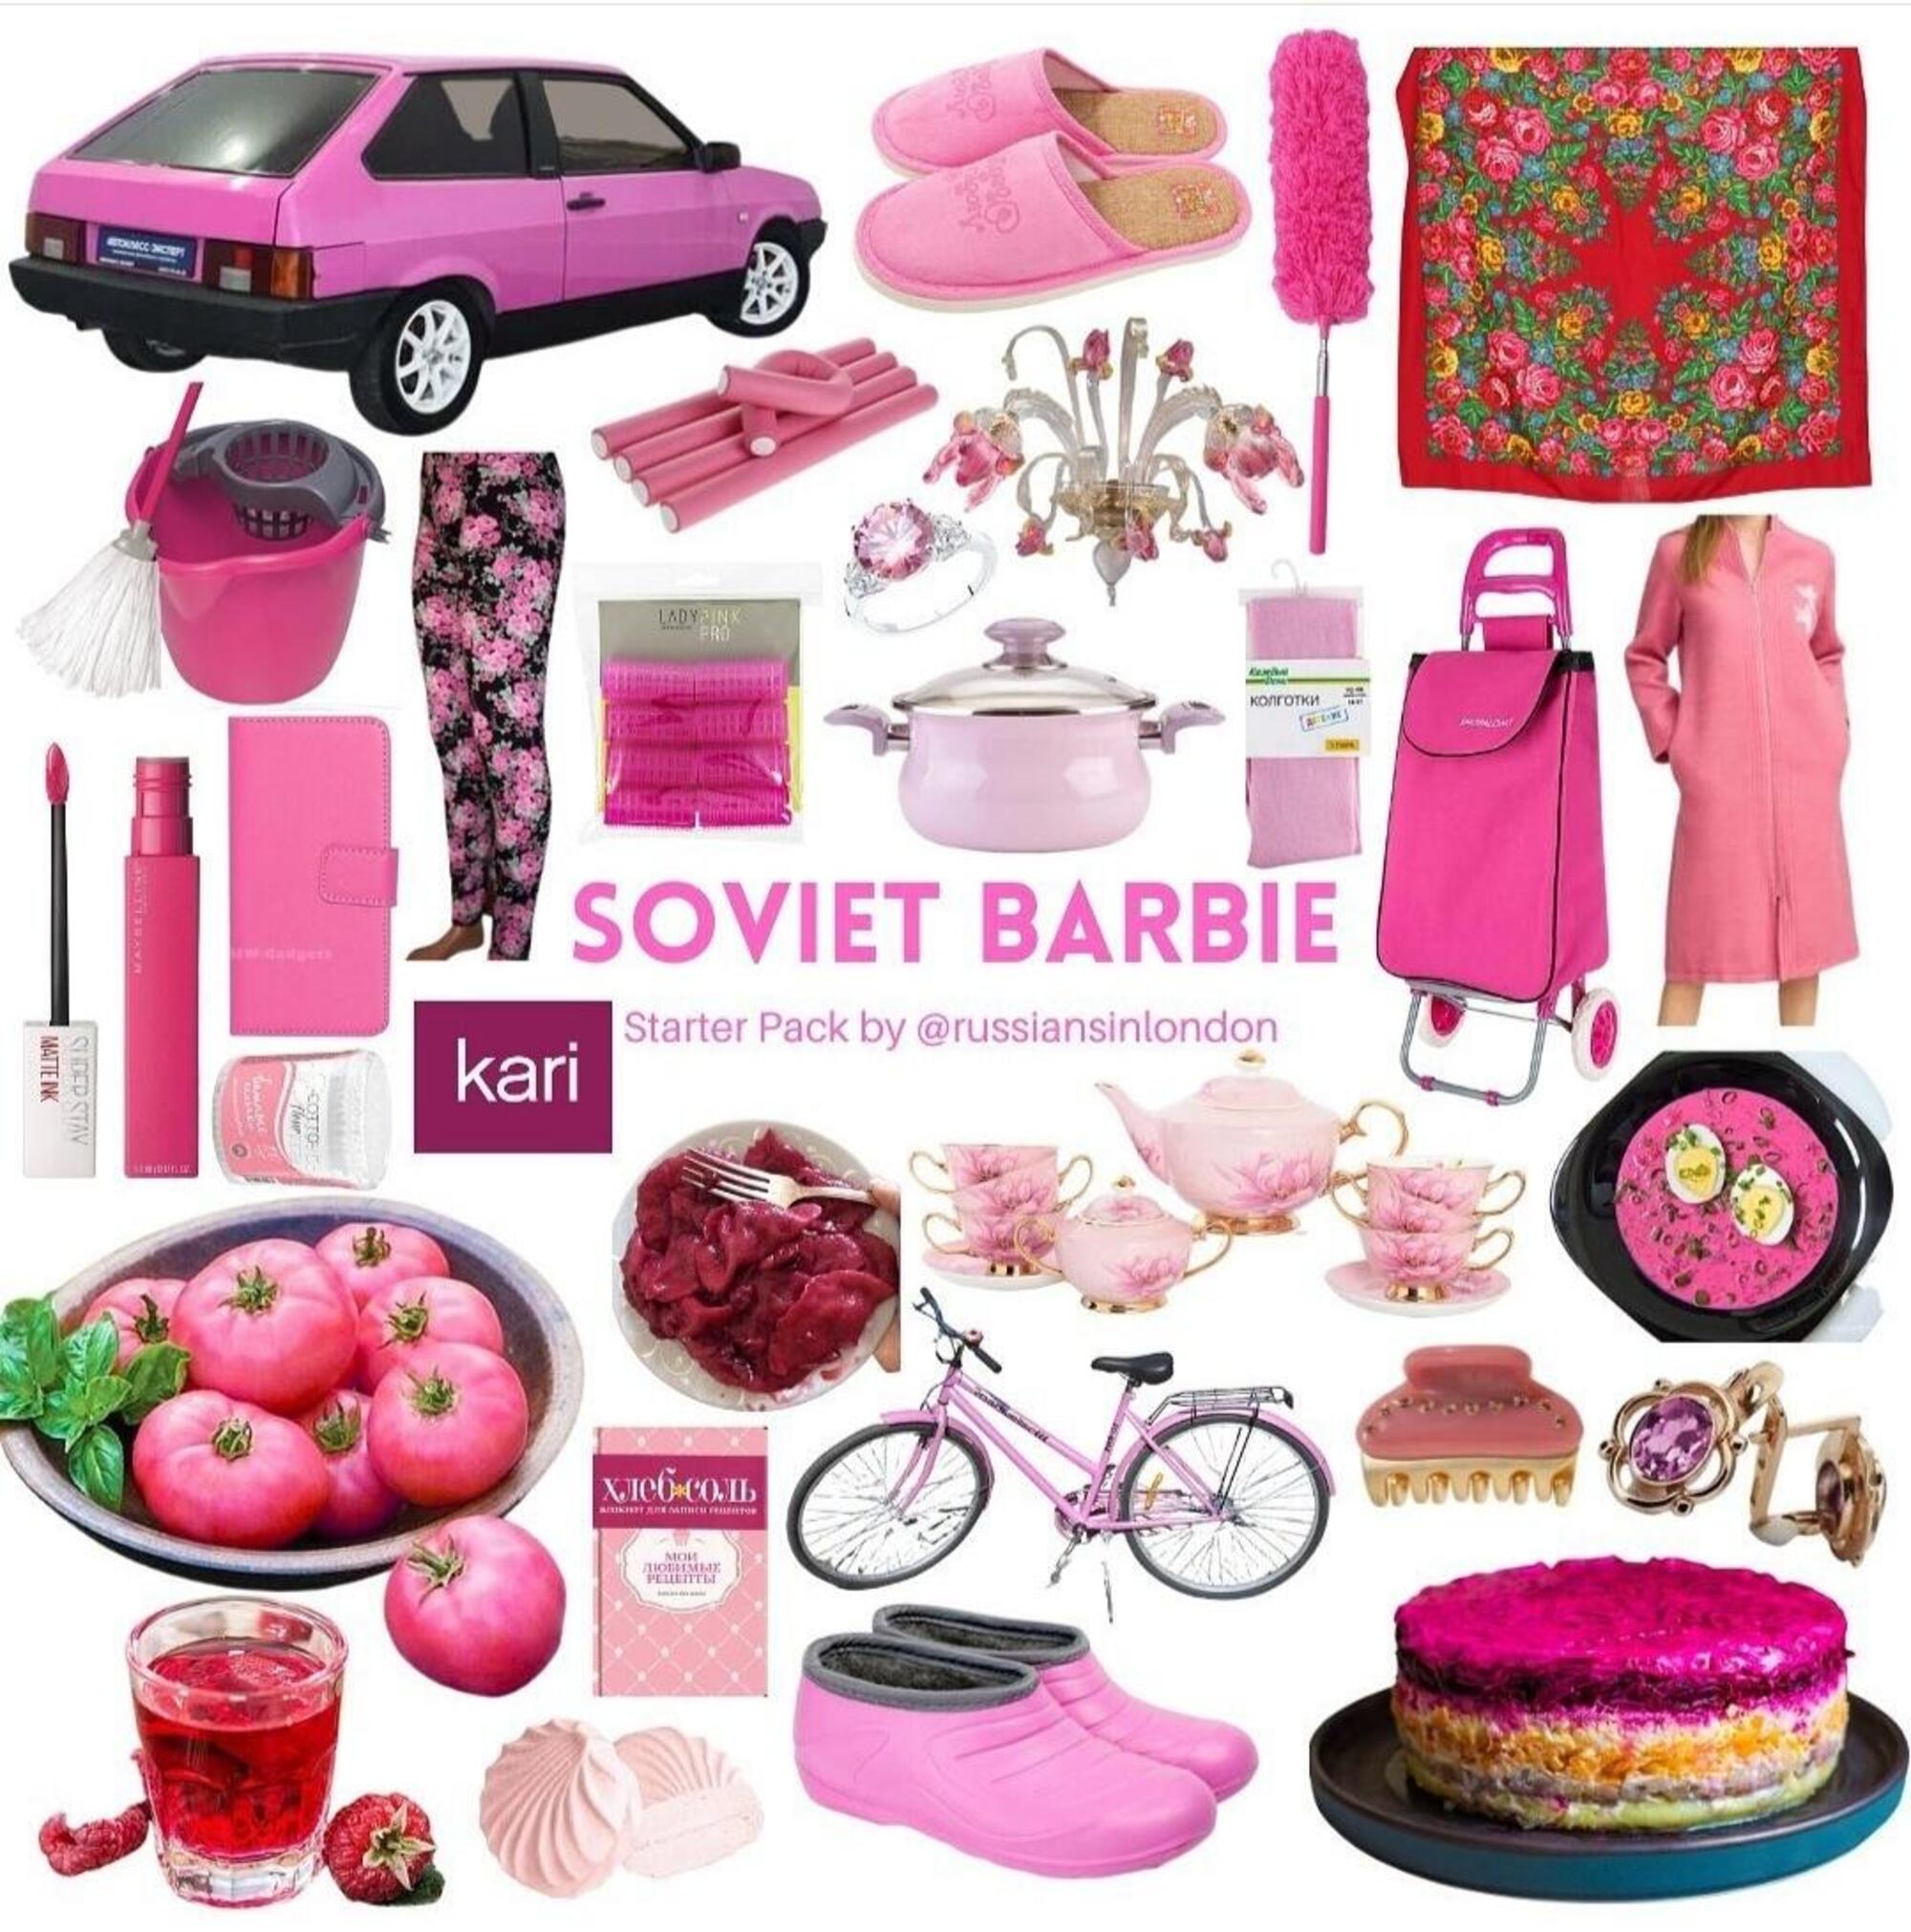 accessori di Soviet Barbie dalla pagina Instagram russiansinlondon